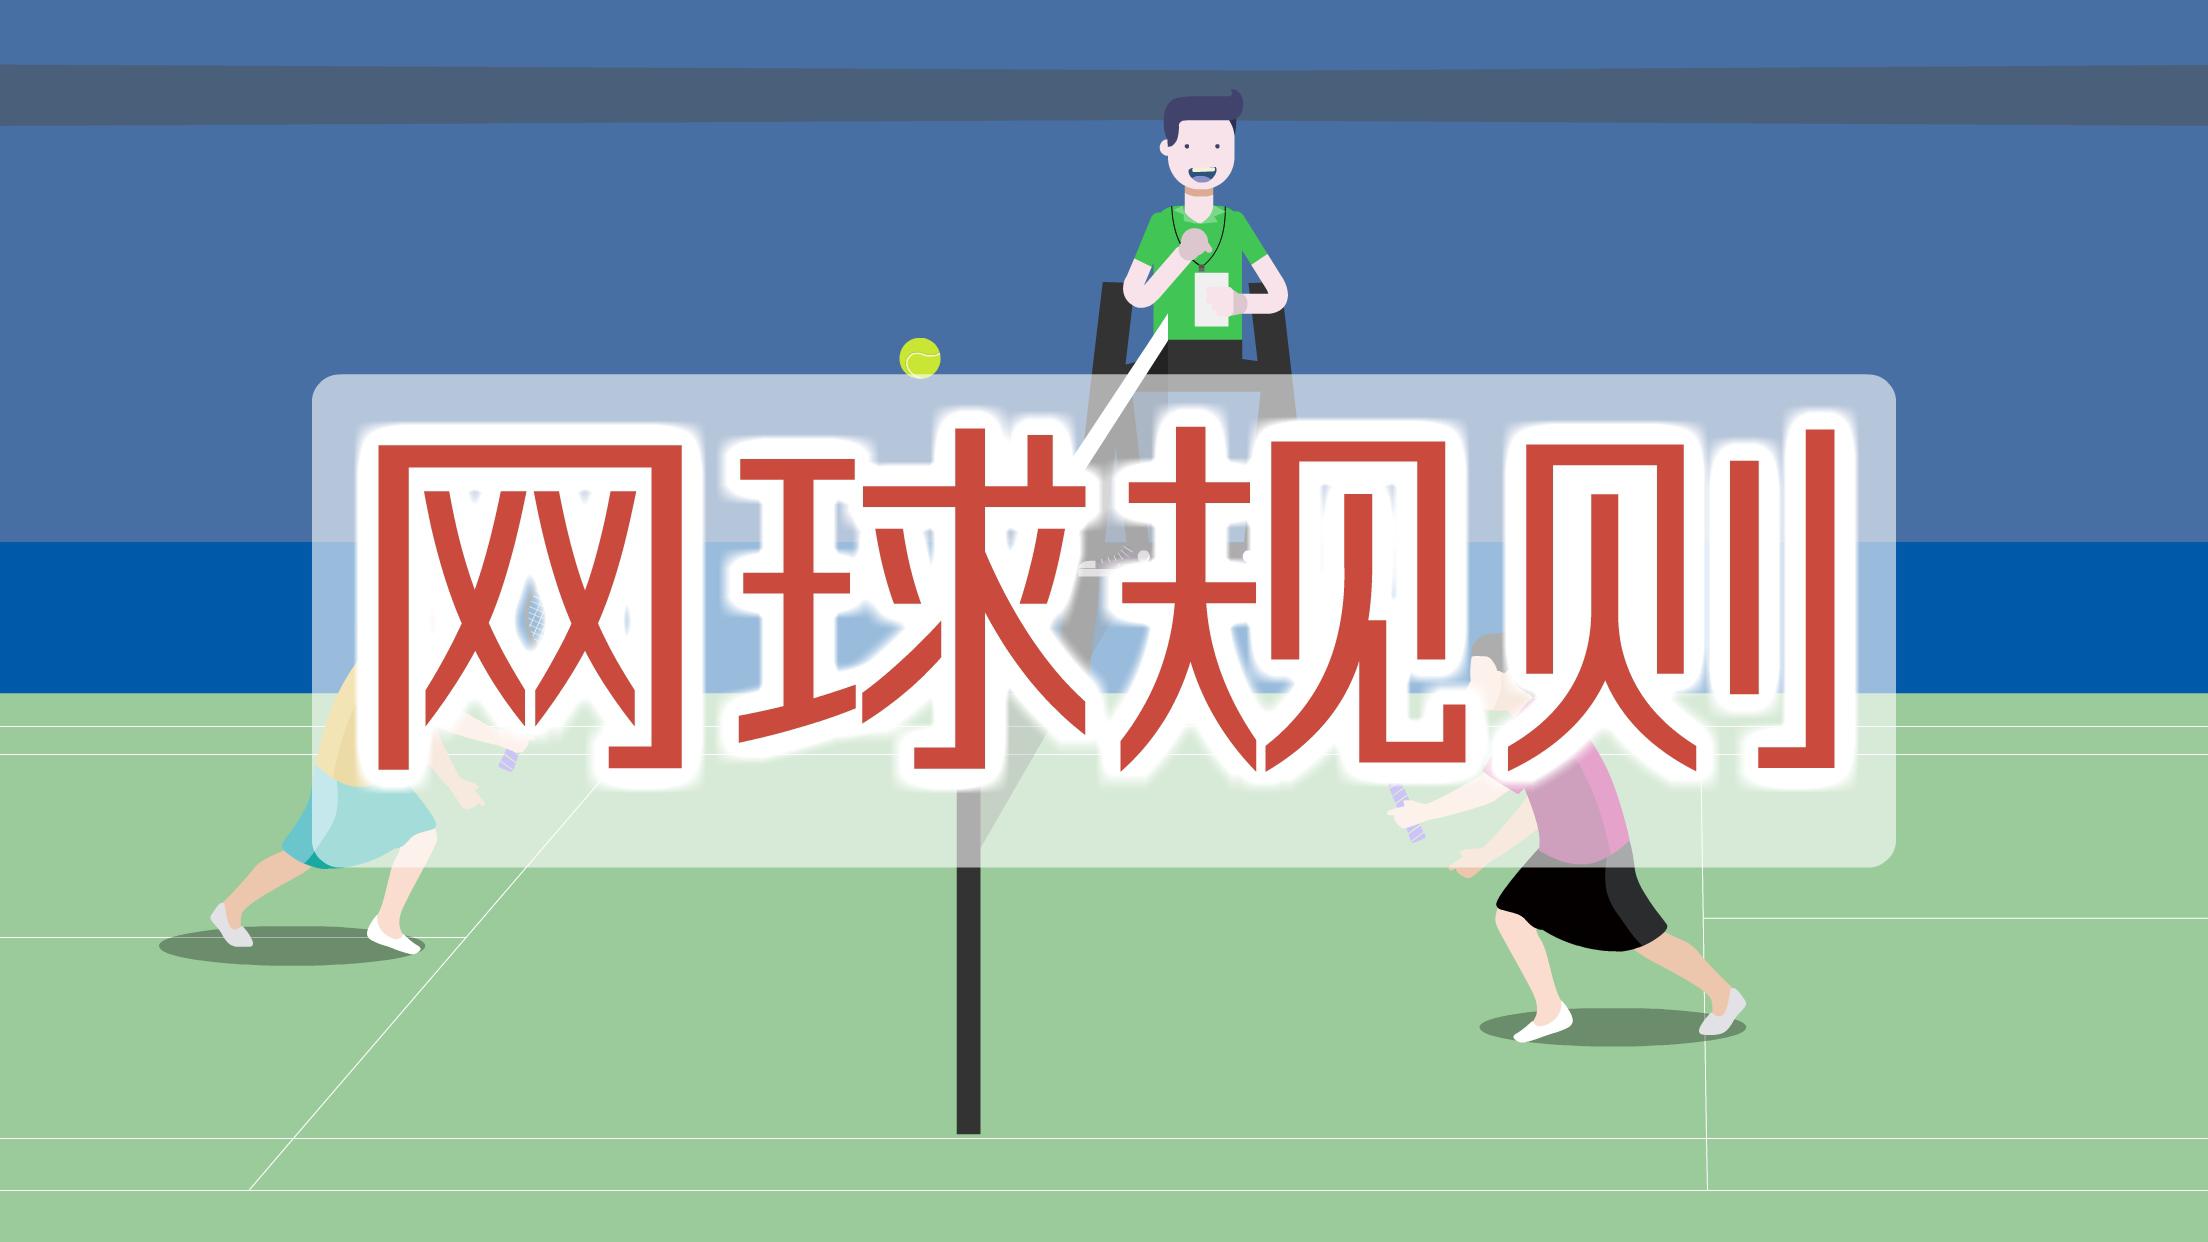 网球规则：用网球拍拍球过网，尽力将球打到对方的场地上去